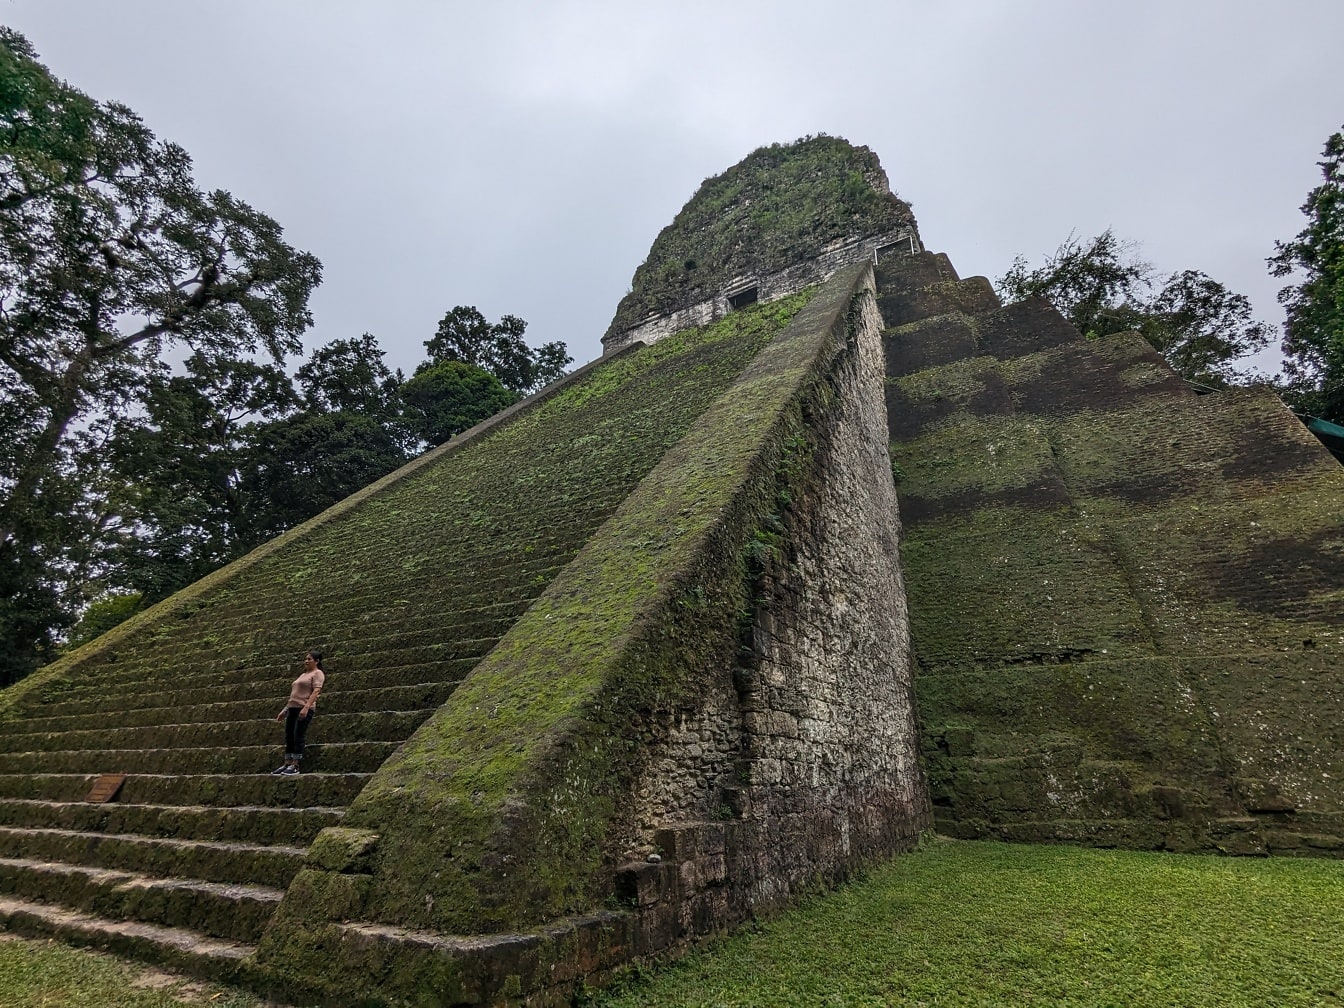 Persona de pie en una escalera de piedra de la pirámide V del templo de Tikal en Guatemala